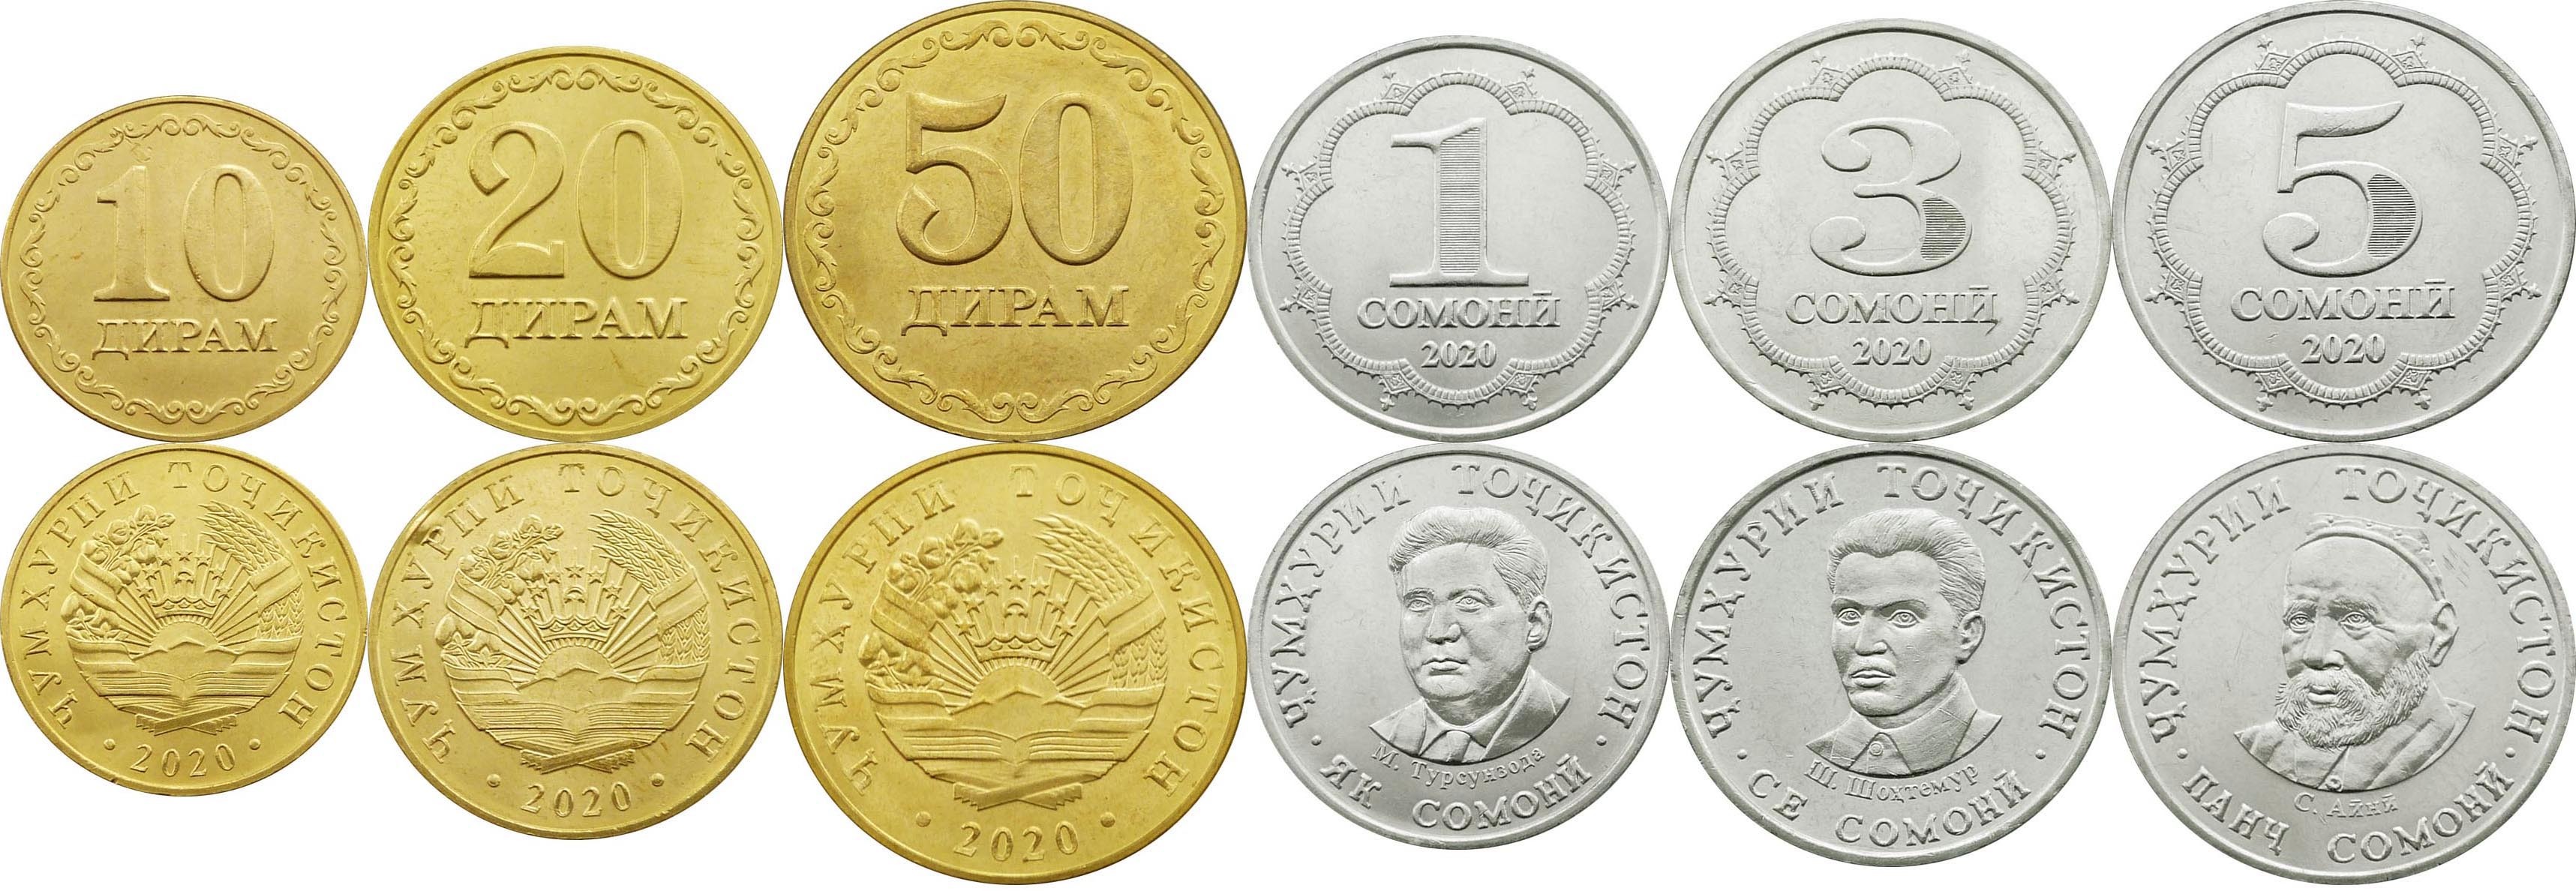 60 сомони в рублях. 500 Сомони танга монета. 10 Сомон 20 дирам. Сомони 50 дирам. Монета 20 дирам.